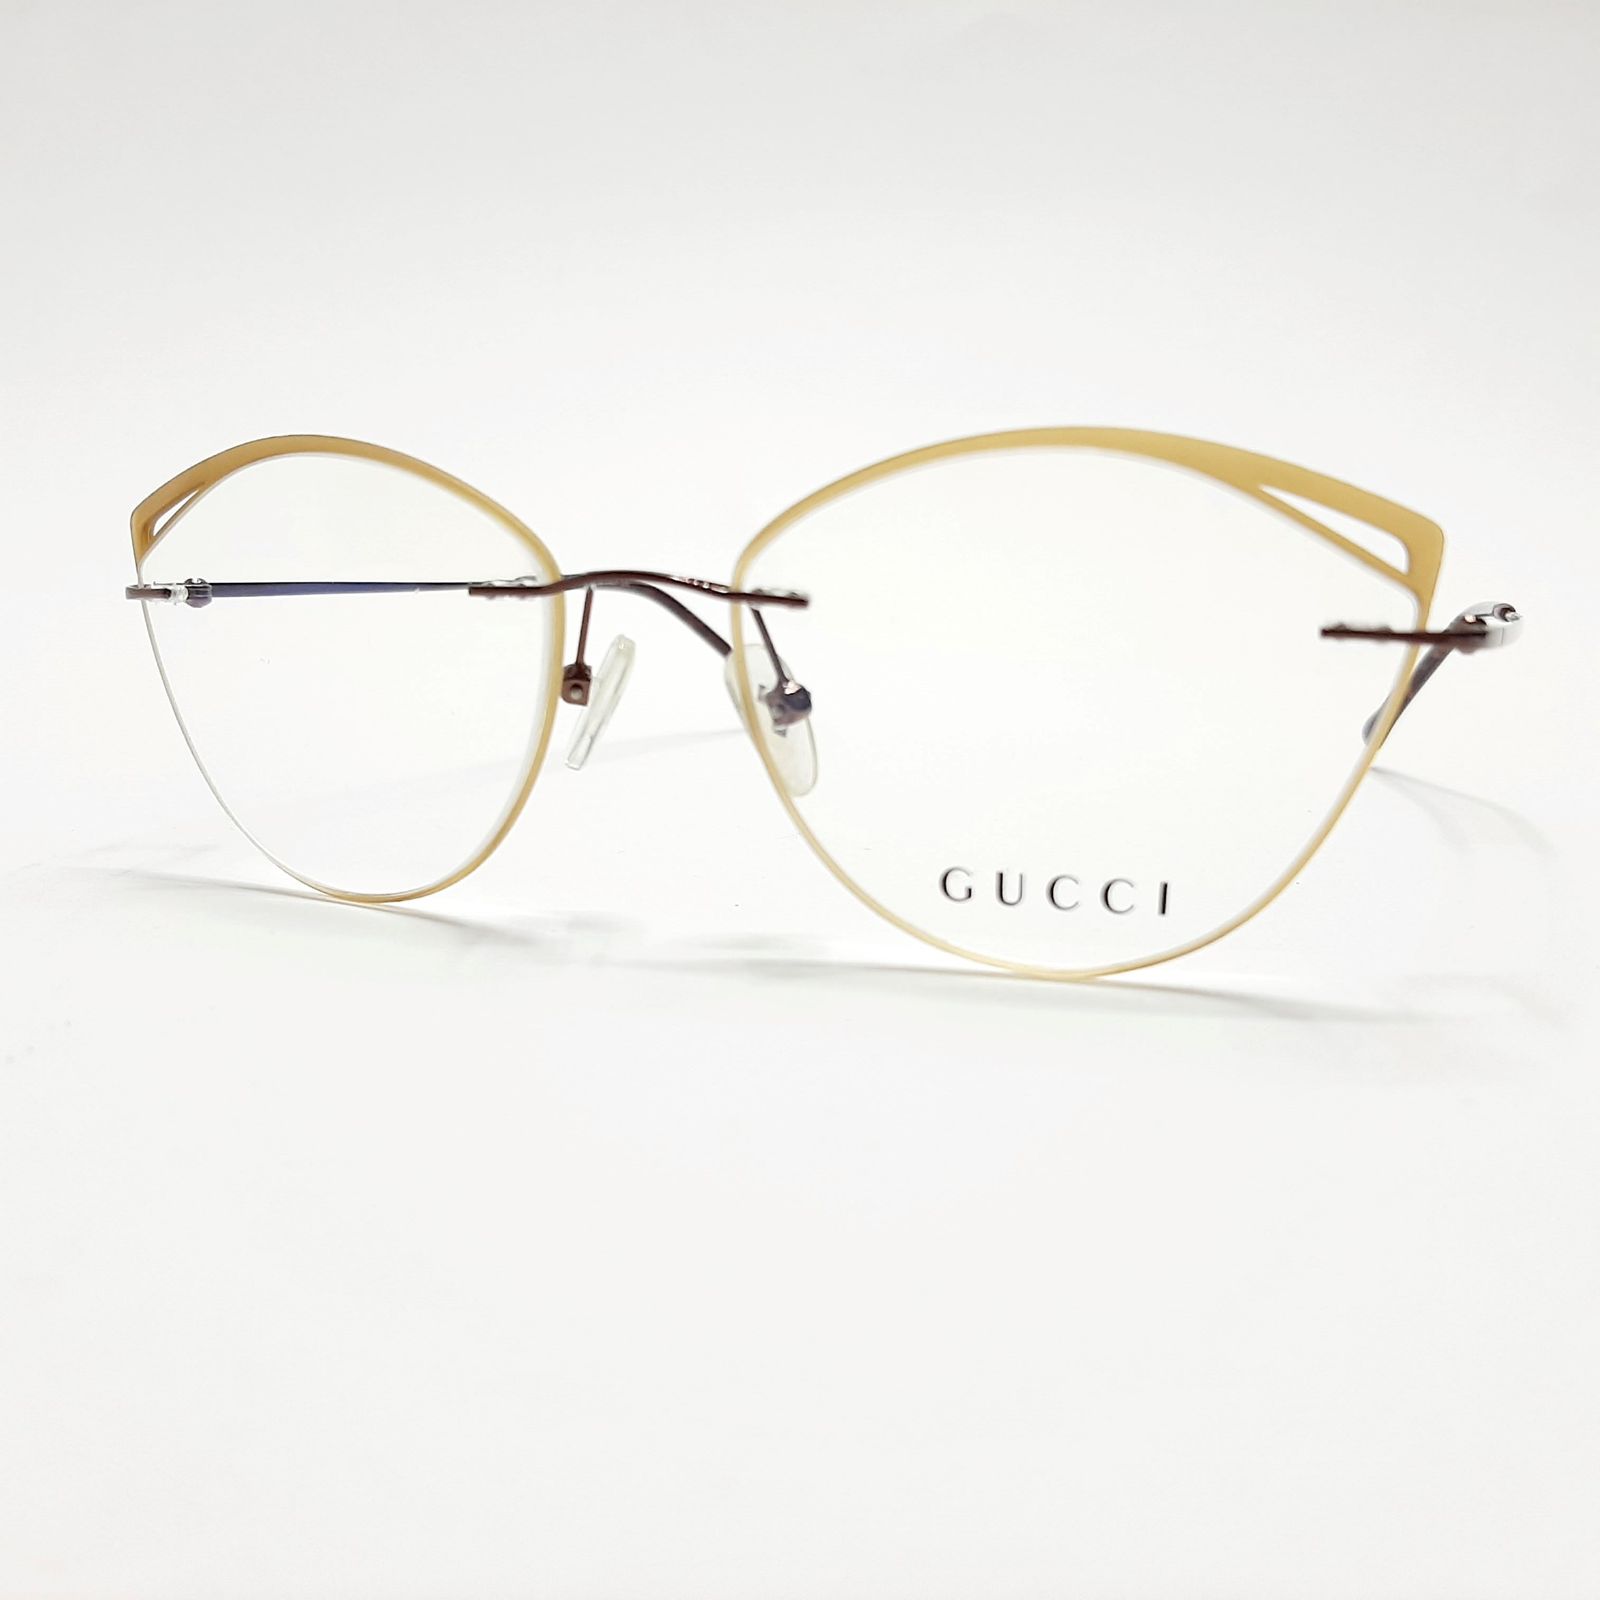 فریم عینک طبی زنانه  مدل GG12166Jc4 -  - 3